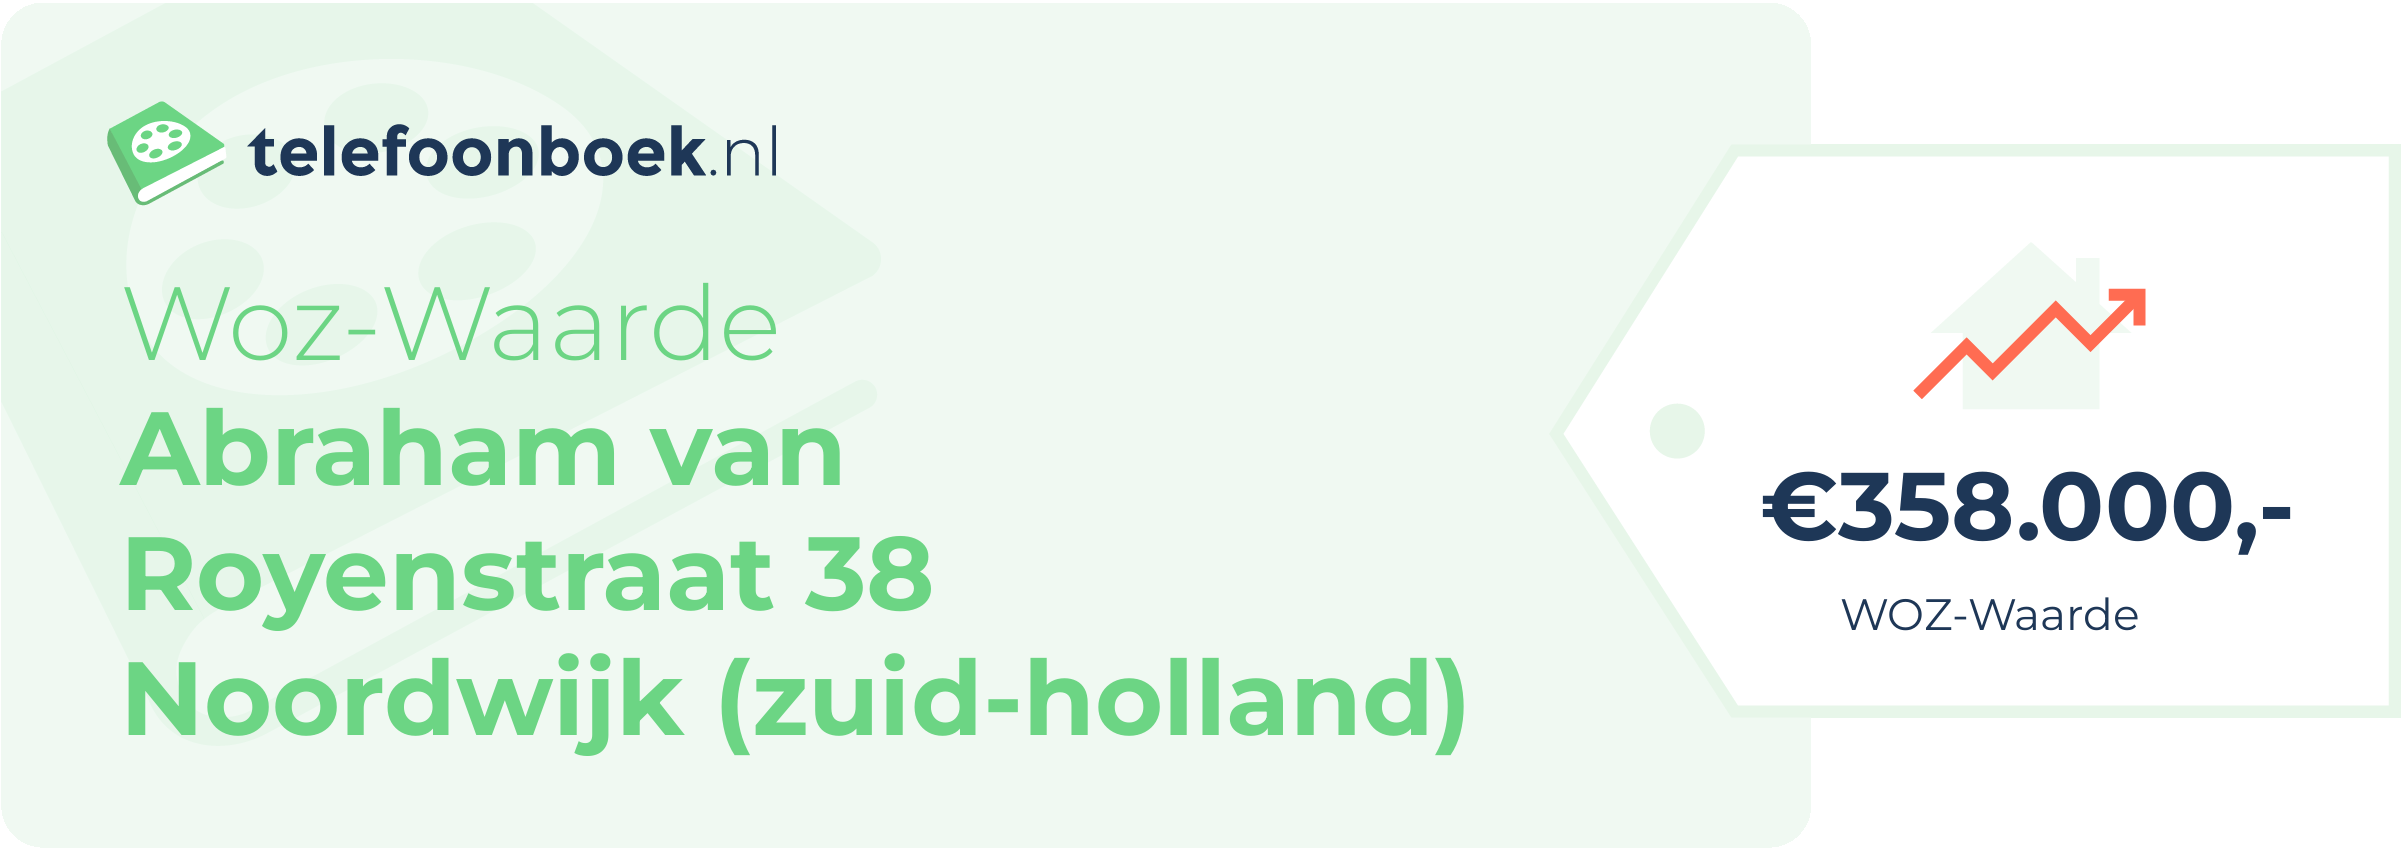 WOZ-waarde Abraham Van Royenstraat 38 Noordwijk (Zuid-Holland)